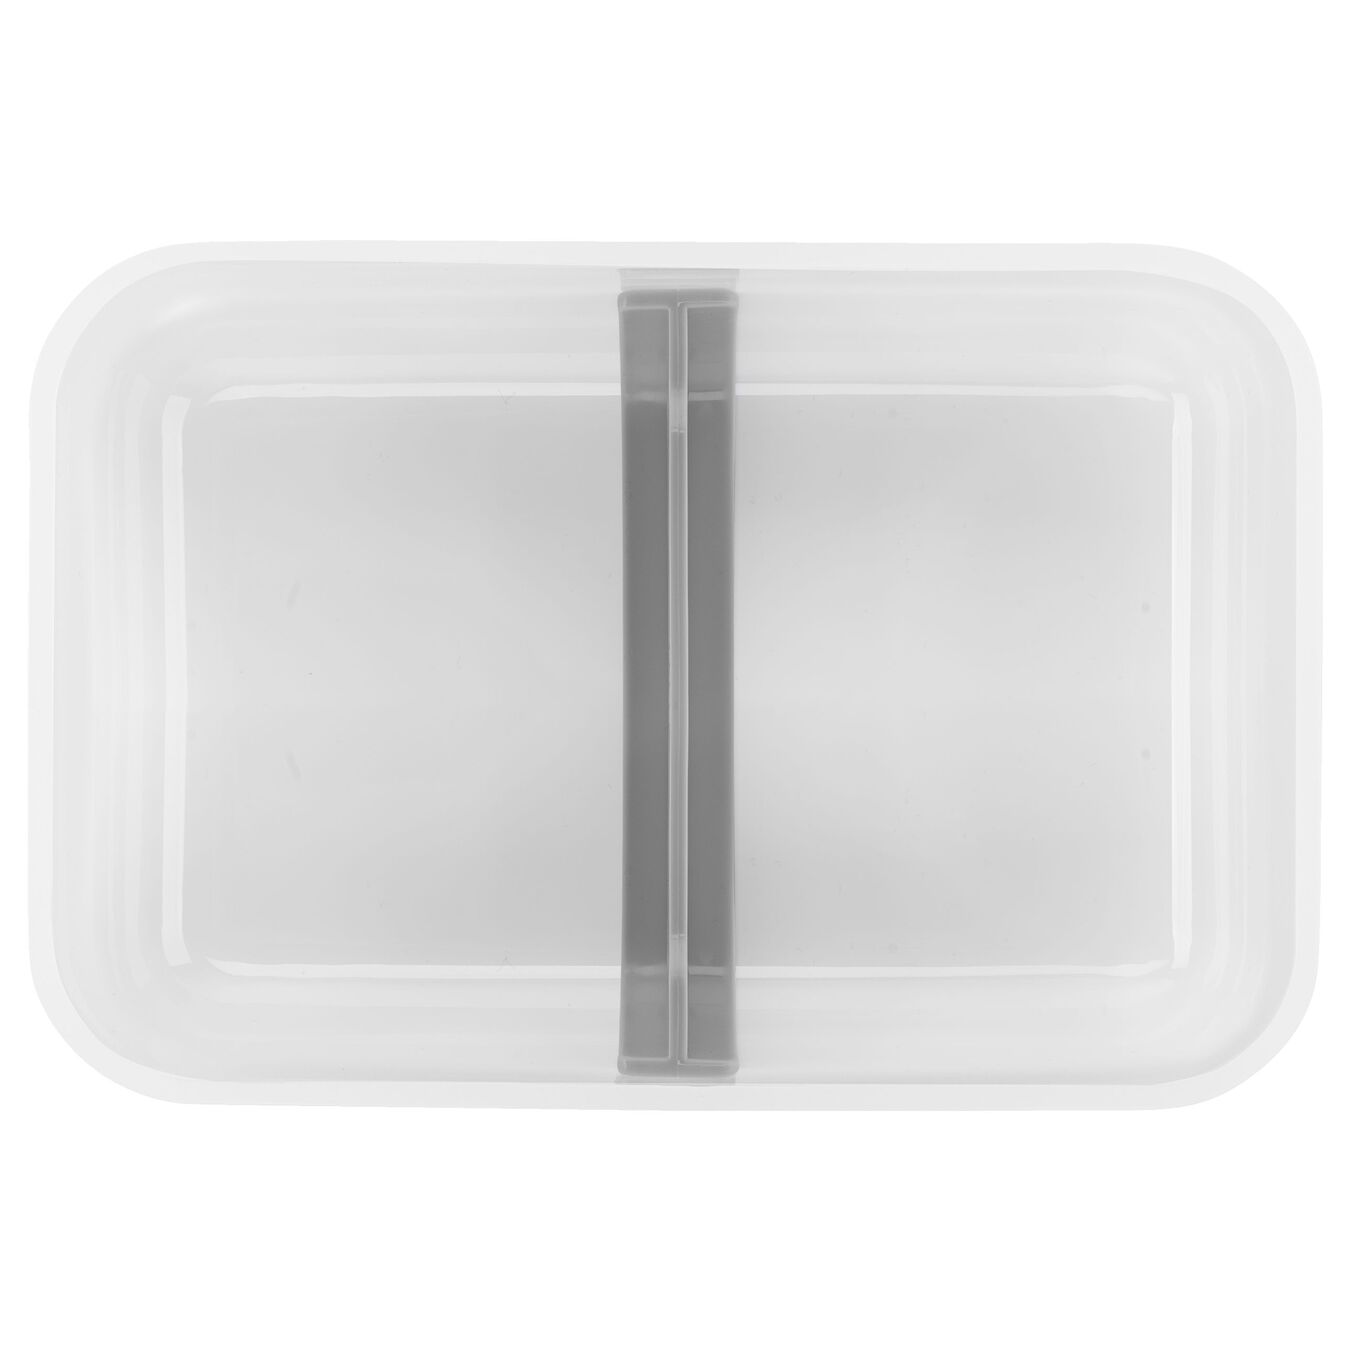 Lunch box sottovuoto L piatto, plastica, semi trasparente-grigio,,large 4